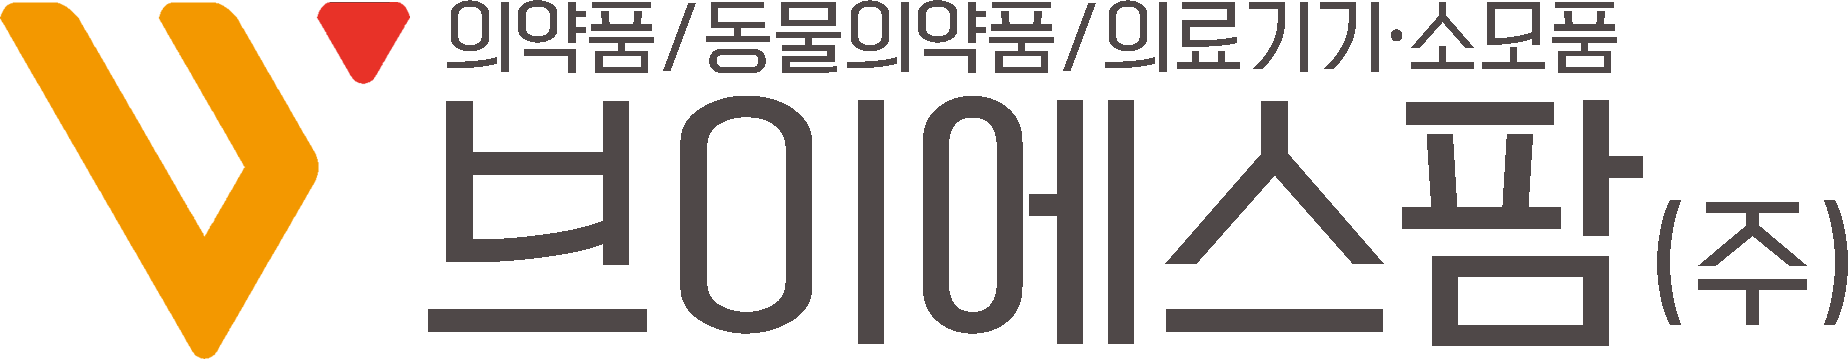 에이치엘비의 계열사 브이에스팜(주)의 로고